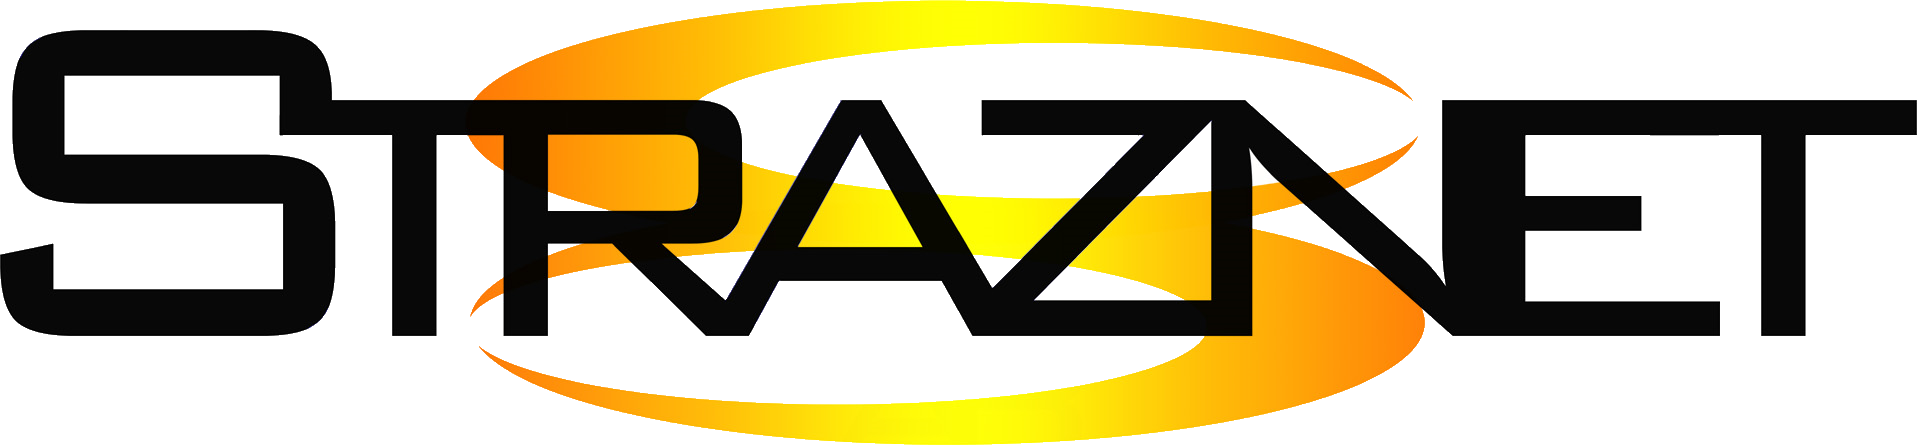 Straznet-logotyp